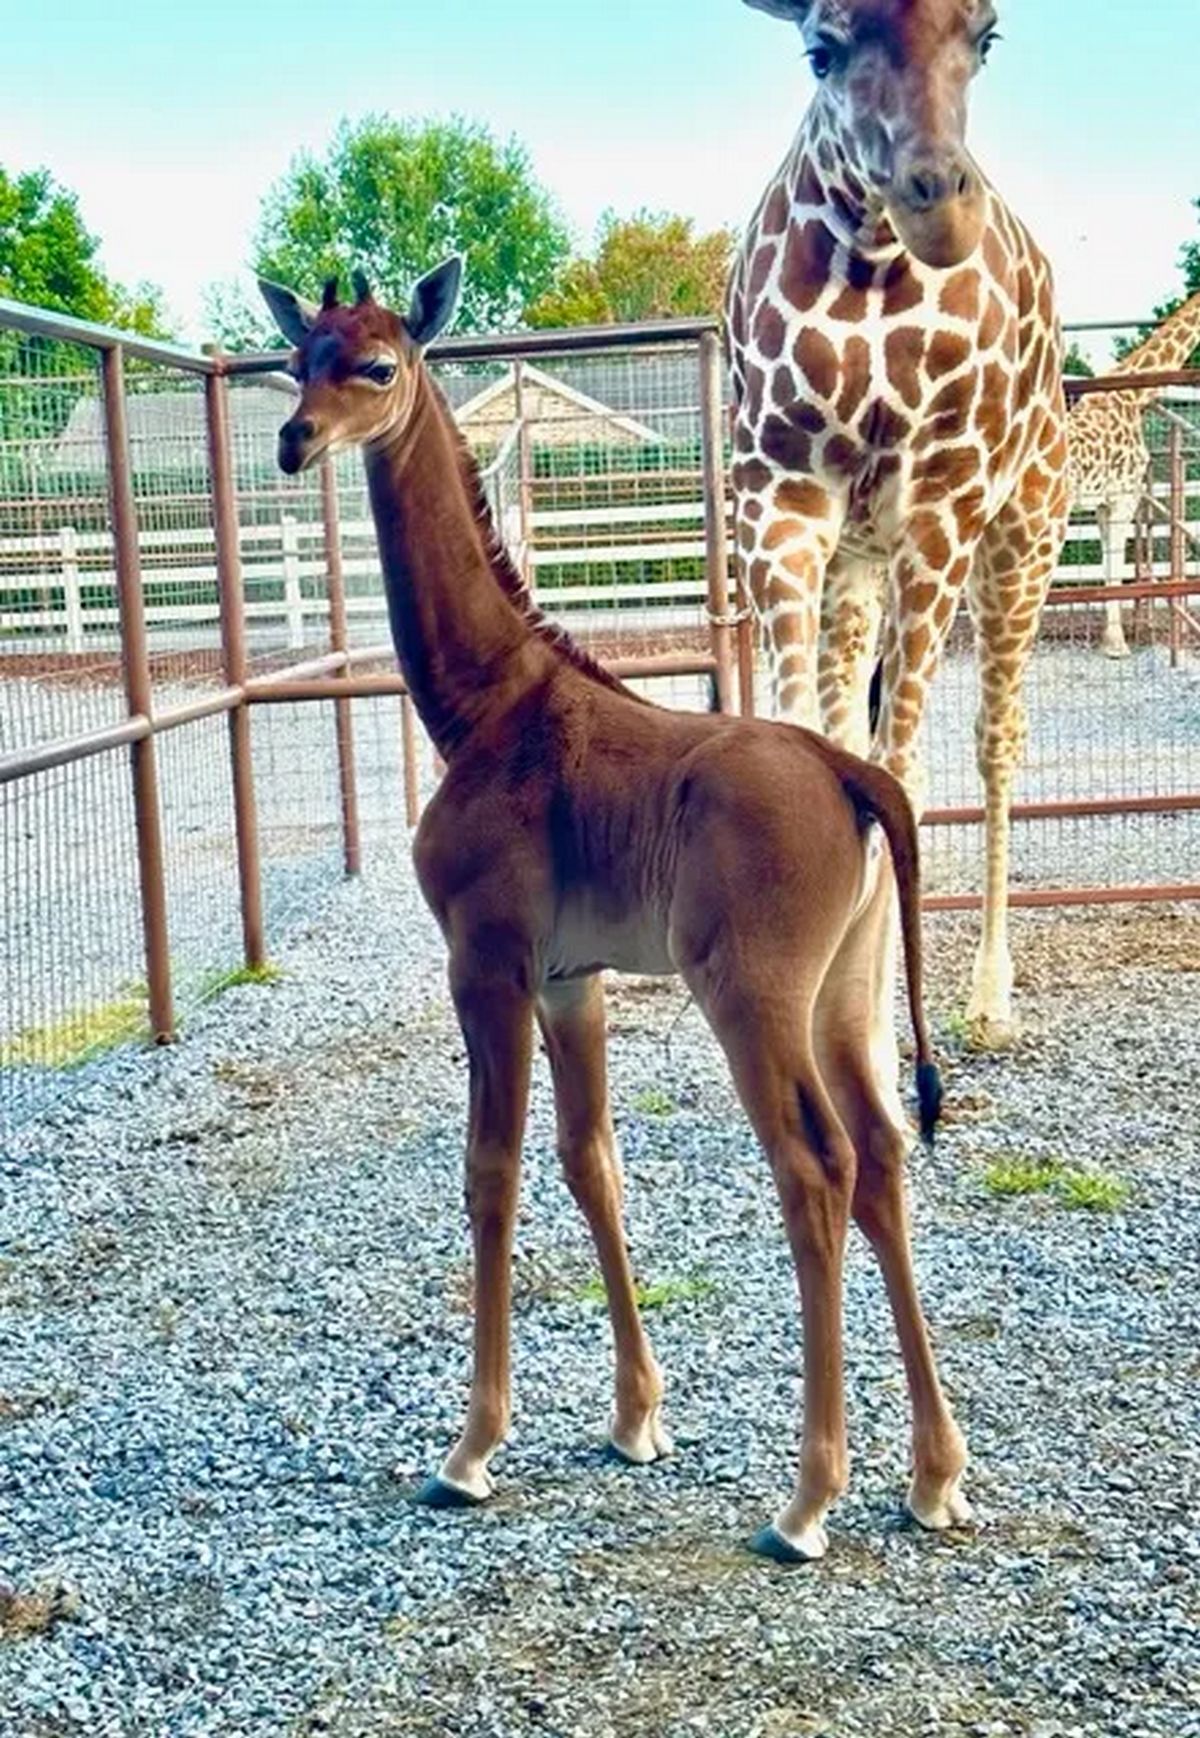 Le bébé girafe est un cas particulier, car les experts pensent qu'il s'agit de la seule girafe réticulée sans taches au monde.